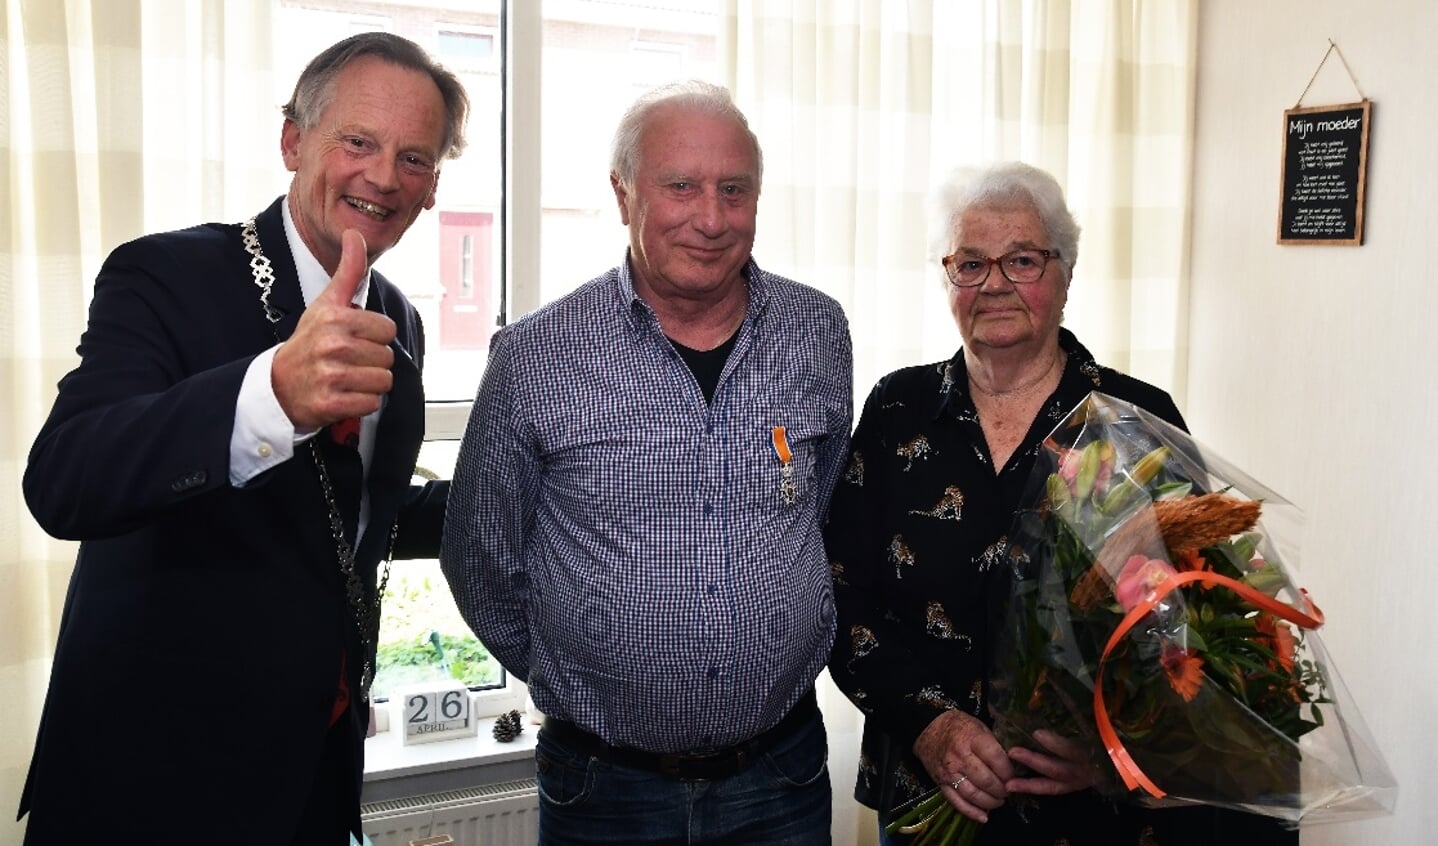 Burgemeester Streng reikte een lintje uit aan Johan Bos en zijn vrouw kreeg een bloemetje.